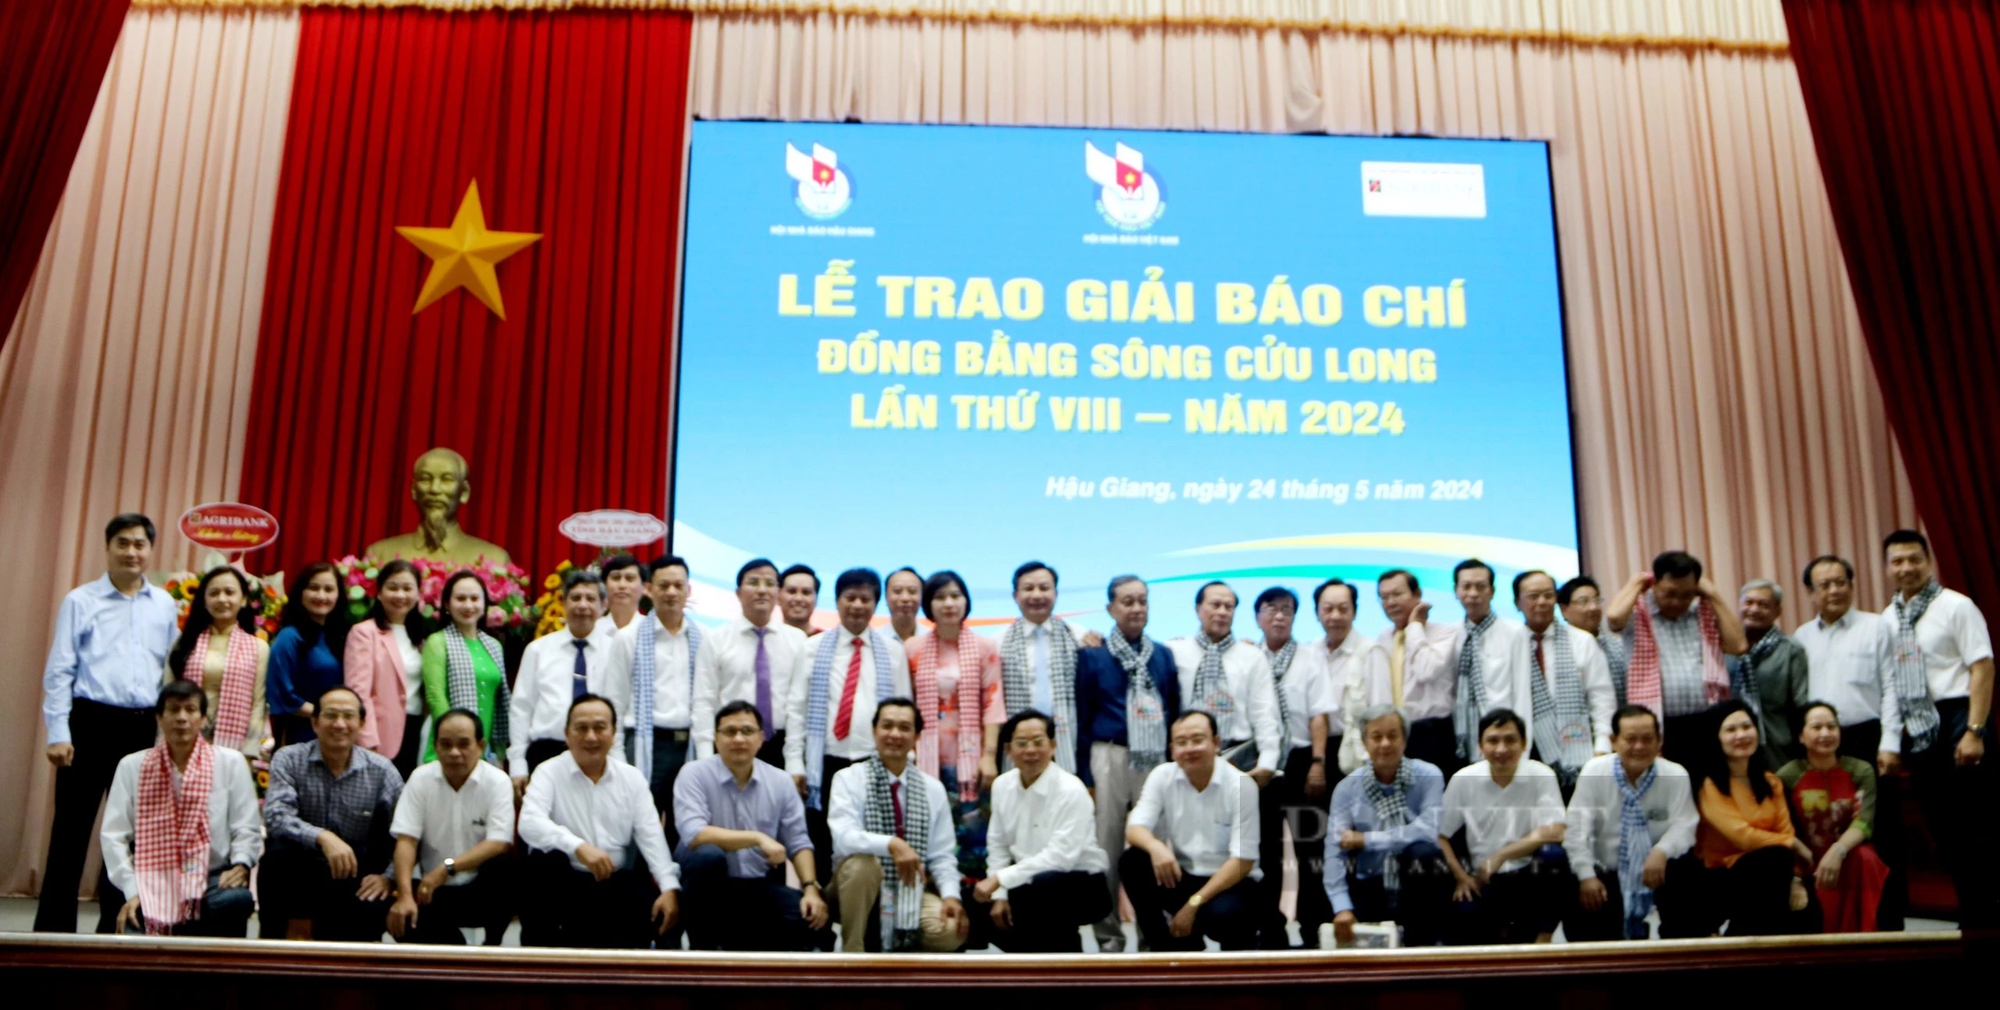 Agribank tài trợ giải Báo chí Đồng bằng sông Cửu Long lần thứ VIII - năm 2024- Ảnh 5.